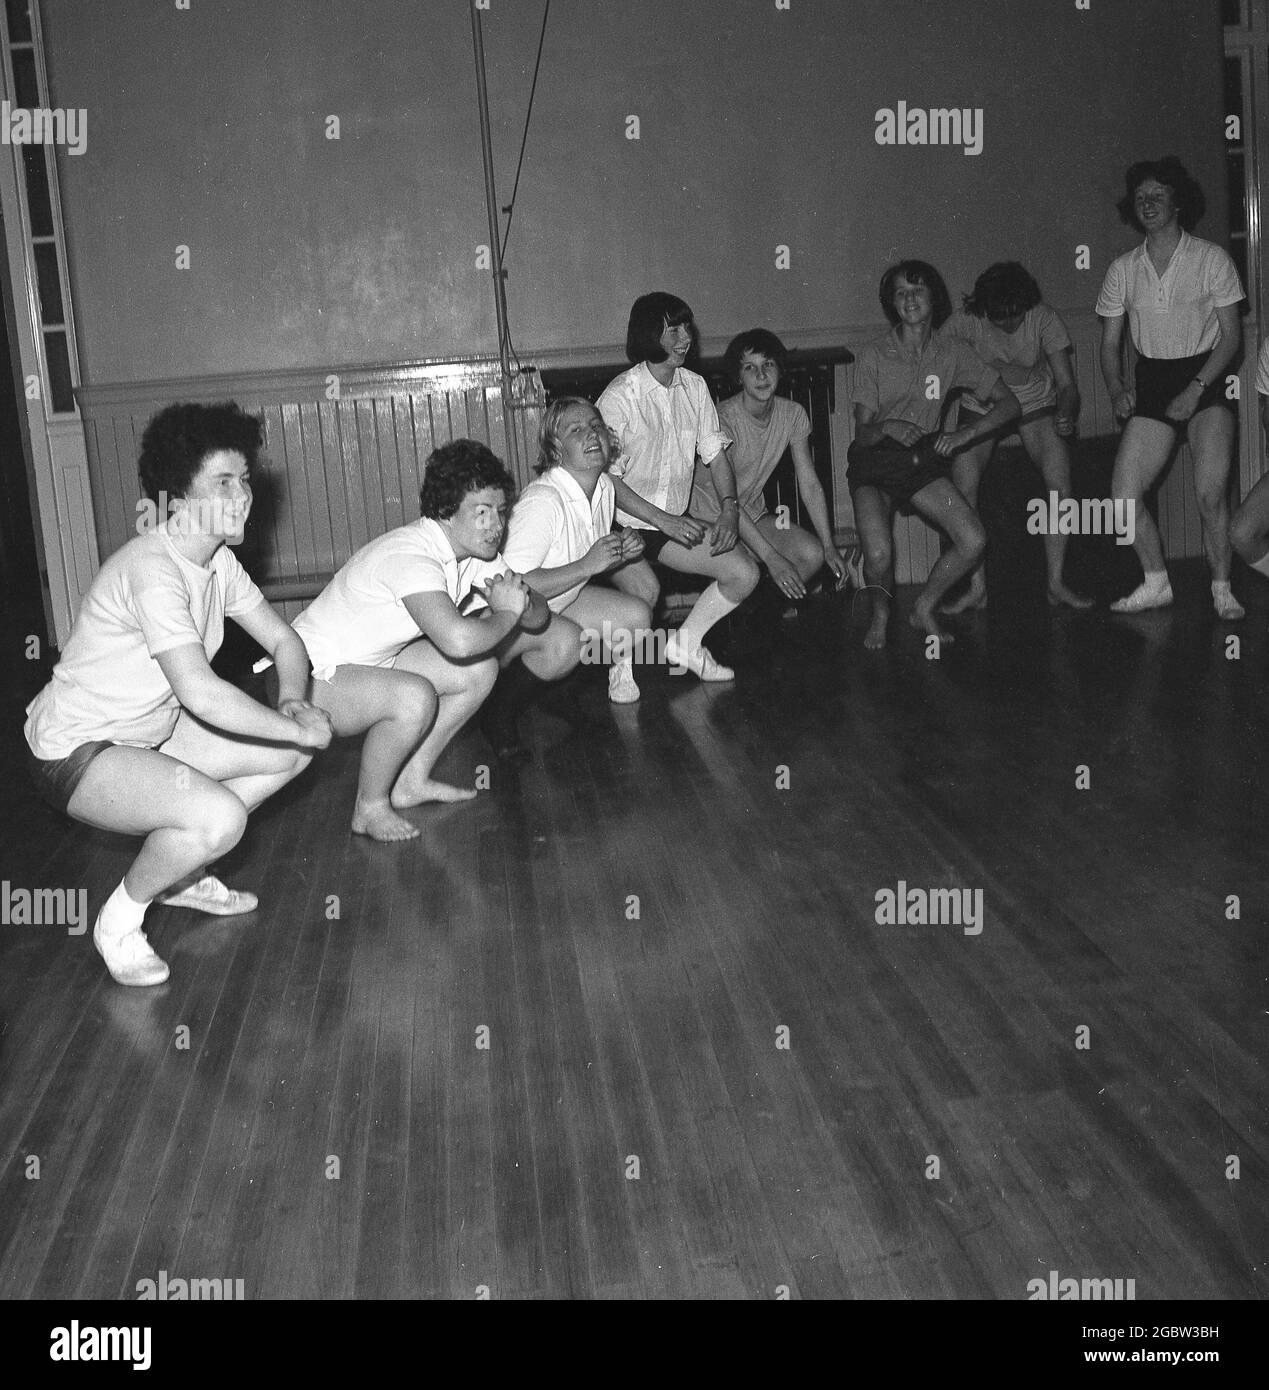 Années 1960, historique, à l'intérieur de la salle de sport d'un club de jeunes, un groupe d'adolescentes dans leurs kits PE faisant des exercices d'étirement ou de squating, Kelty, Écosse, Royaume-Uni. Banque D'Images